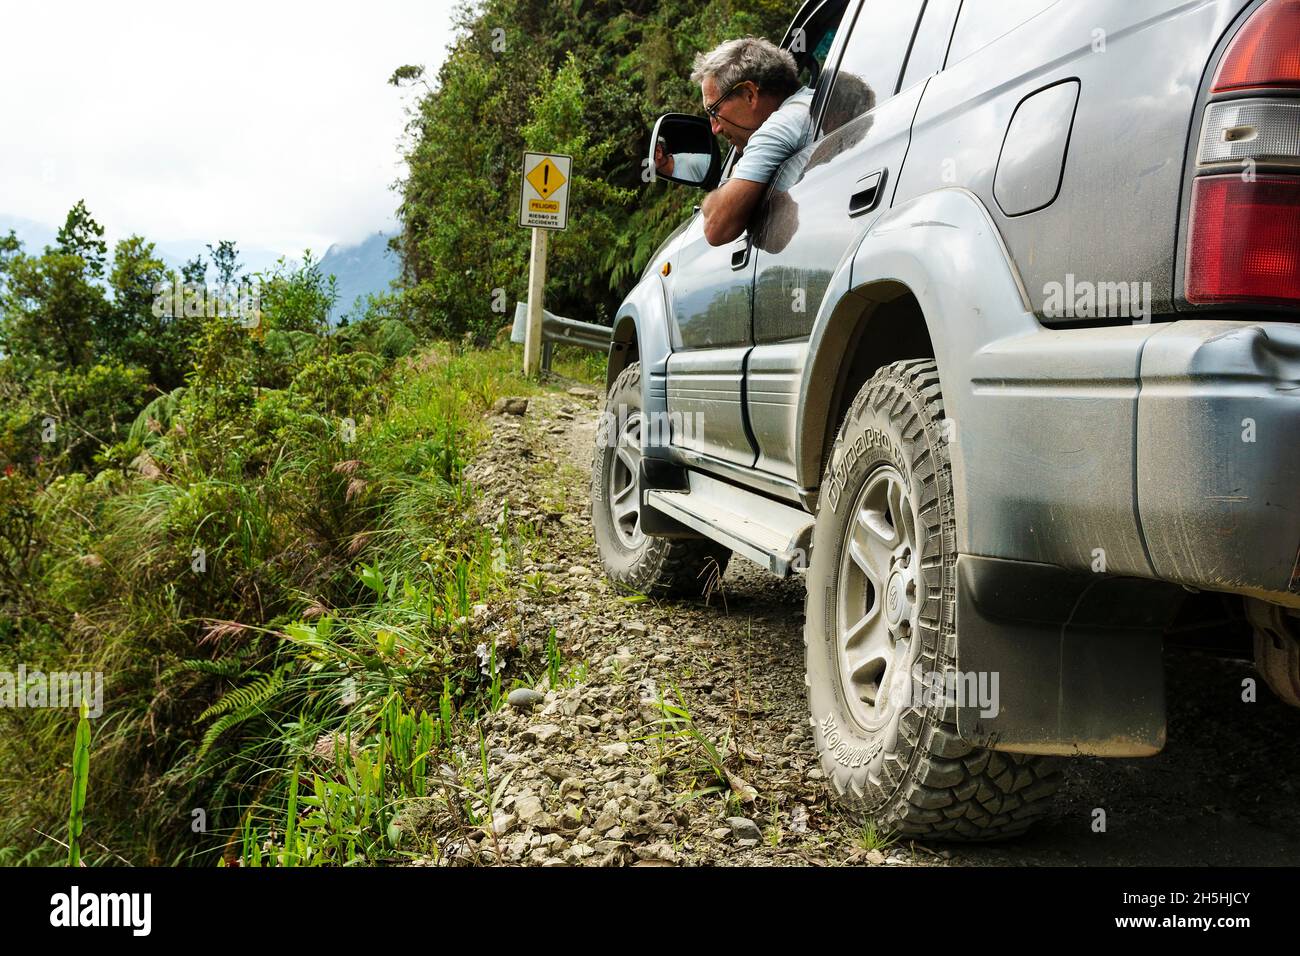 Le conducteur vérifie la route dans un véhicule tout-terrain, Toyota Land Cruiser, sur la route de la mort, Camino de la Muerte, département de la Paz, Bolivie Banque D'Images